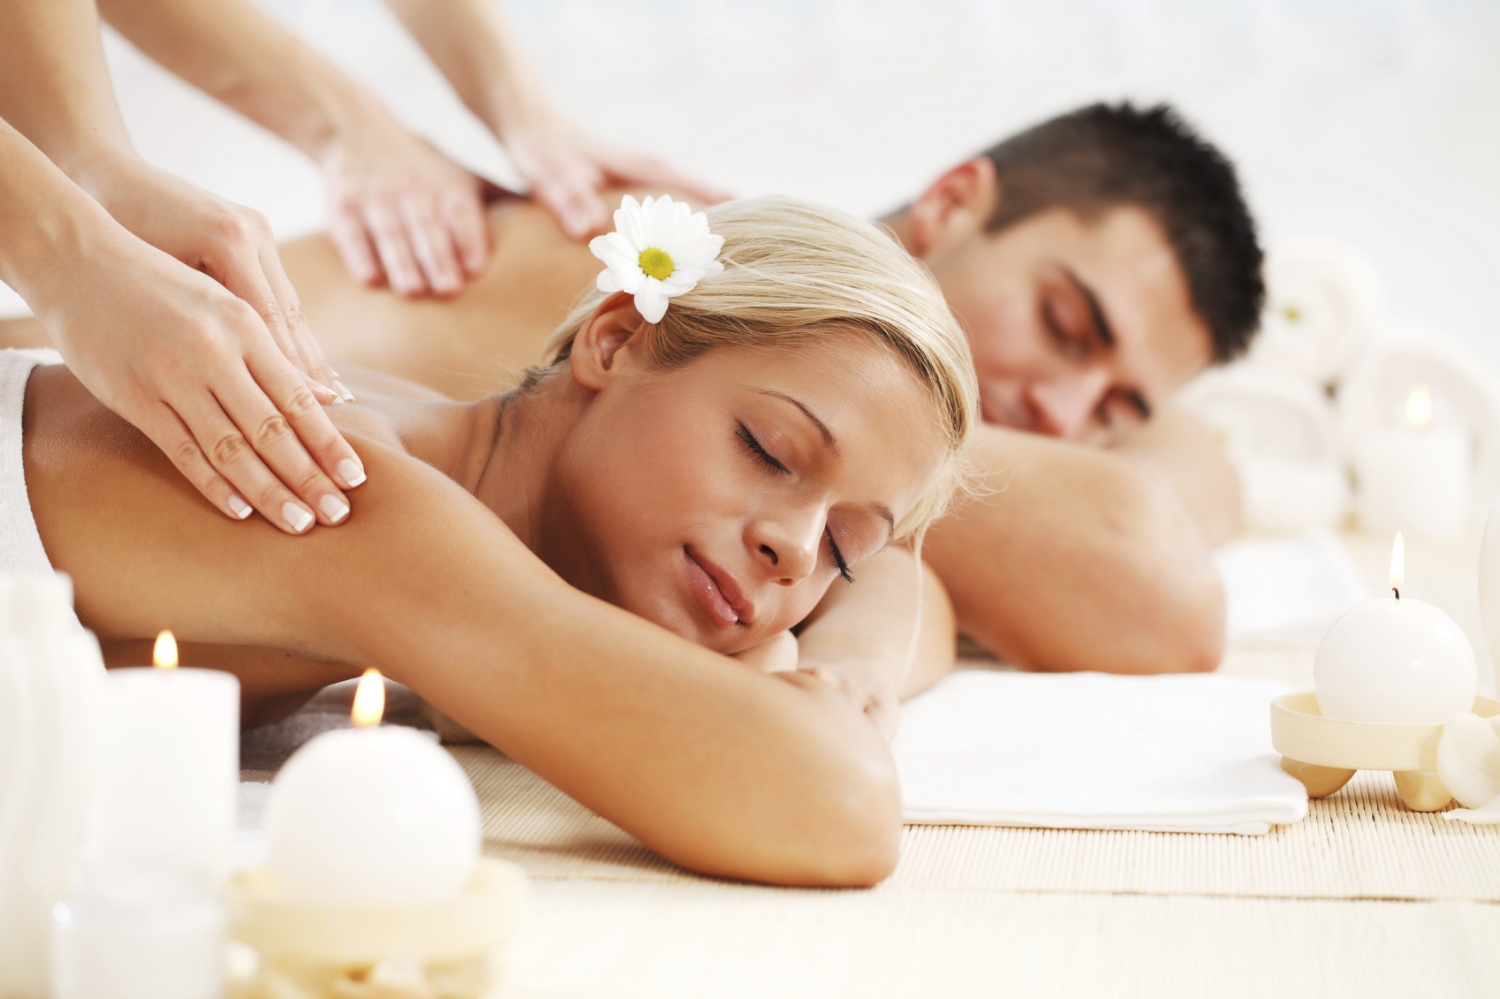 Vero Beach Erotic Massage Parlors in Florida Erotic massage Florida Ridge